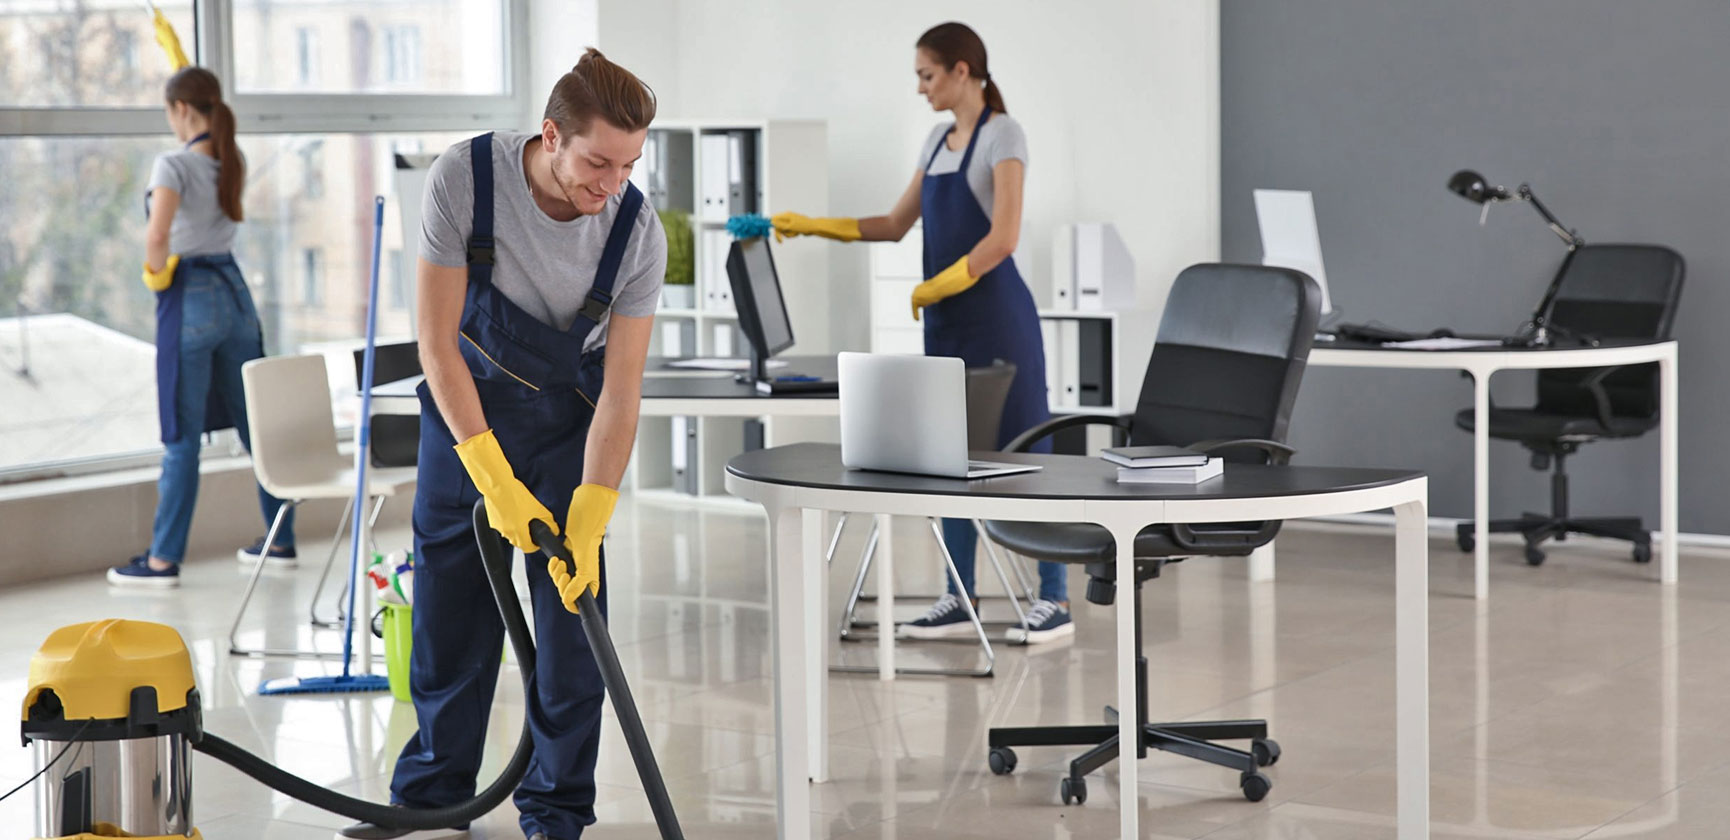 Somos la mejor solución para que te despreocupes de la limpieza de tu oficina, negocio o apartamento